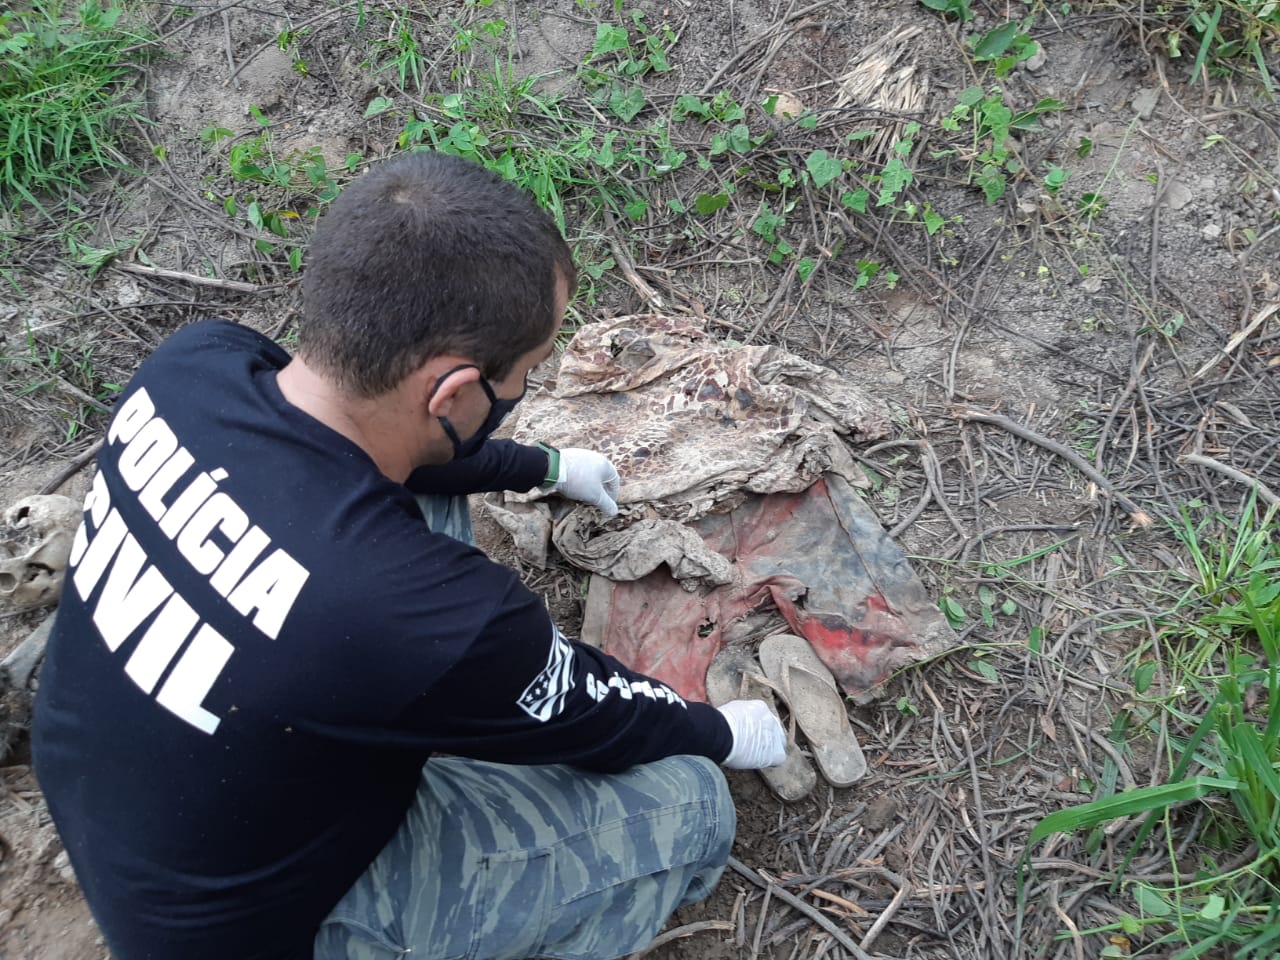 A Polícia Civil encontrou, neste sábado (6), uma ossada humana na zona rural do município goiano de Niquelândia - Polícia encontra ossada humana na zona rural